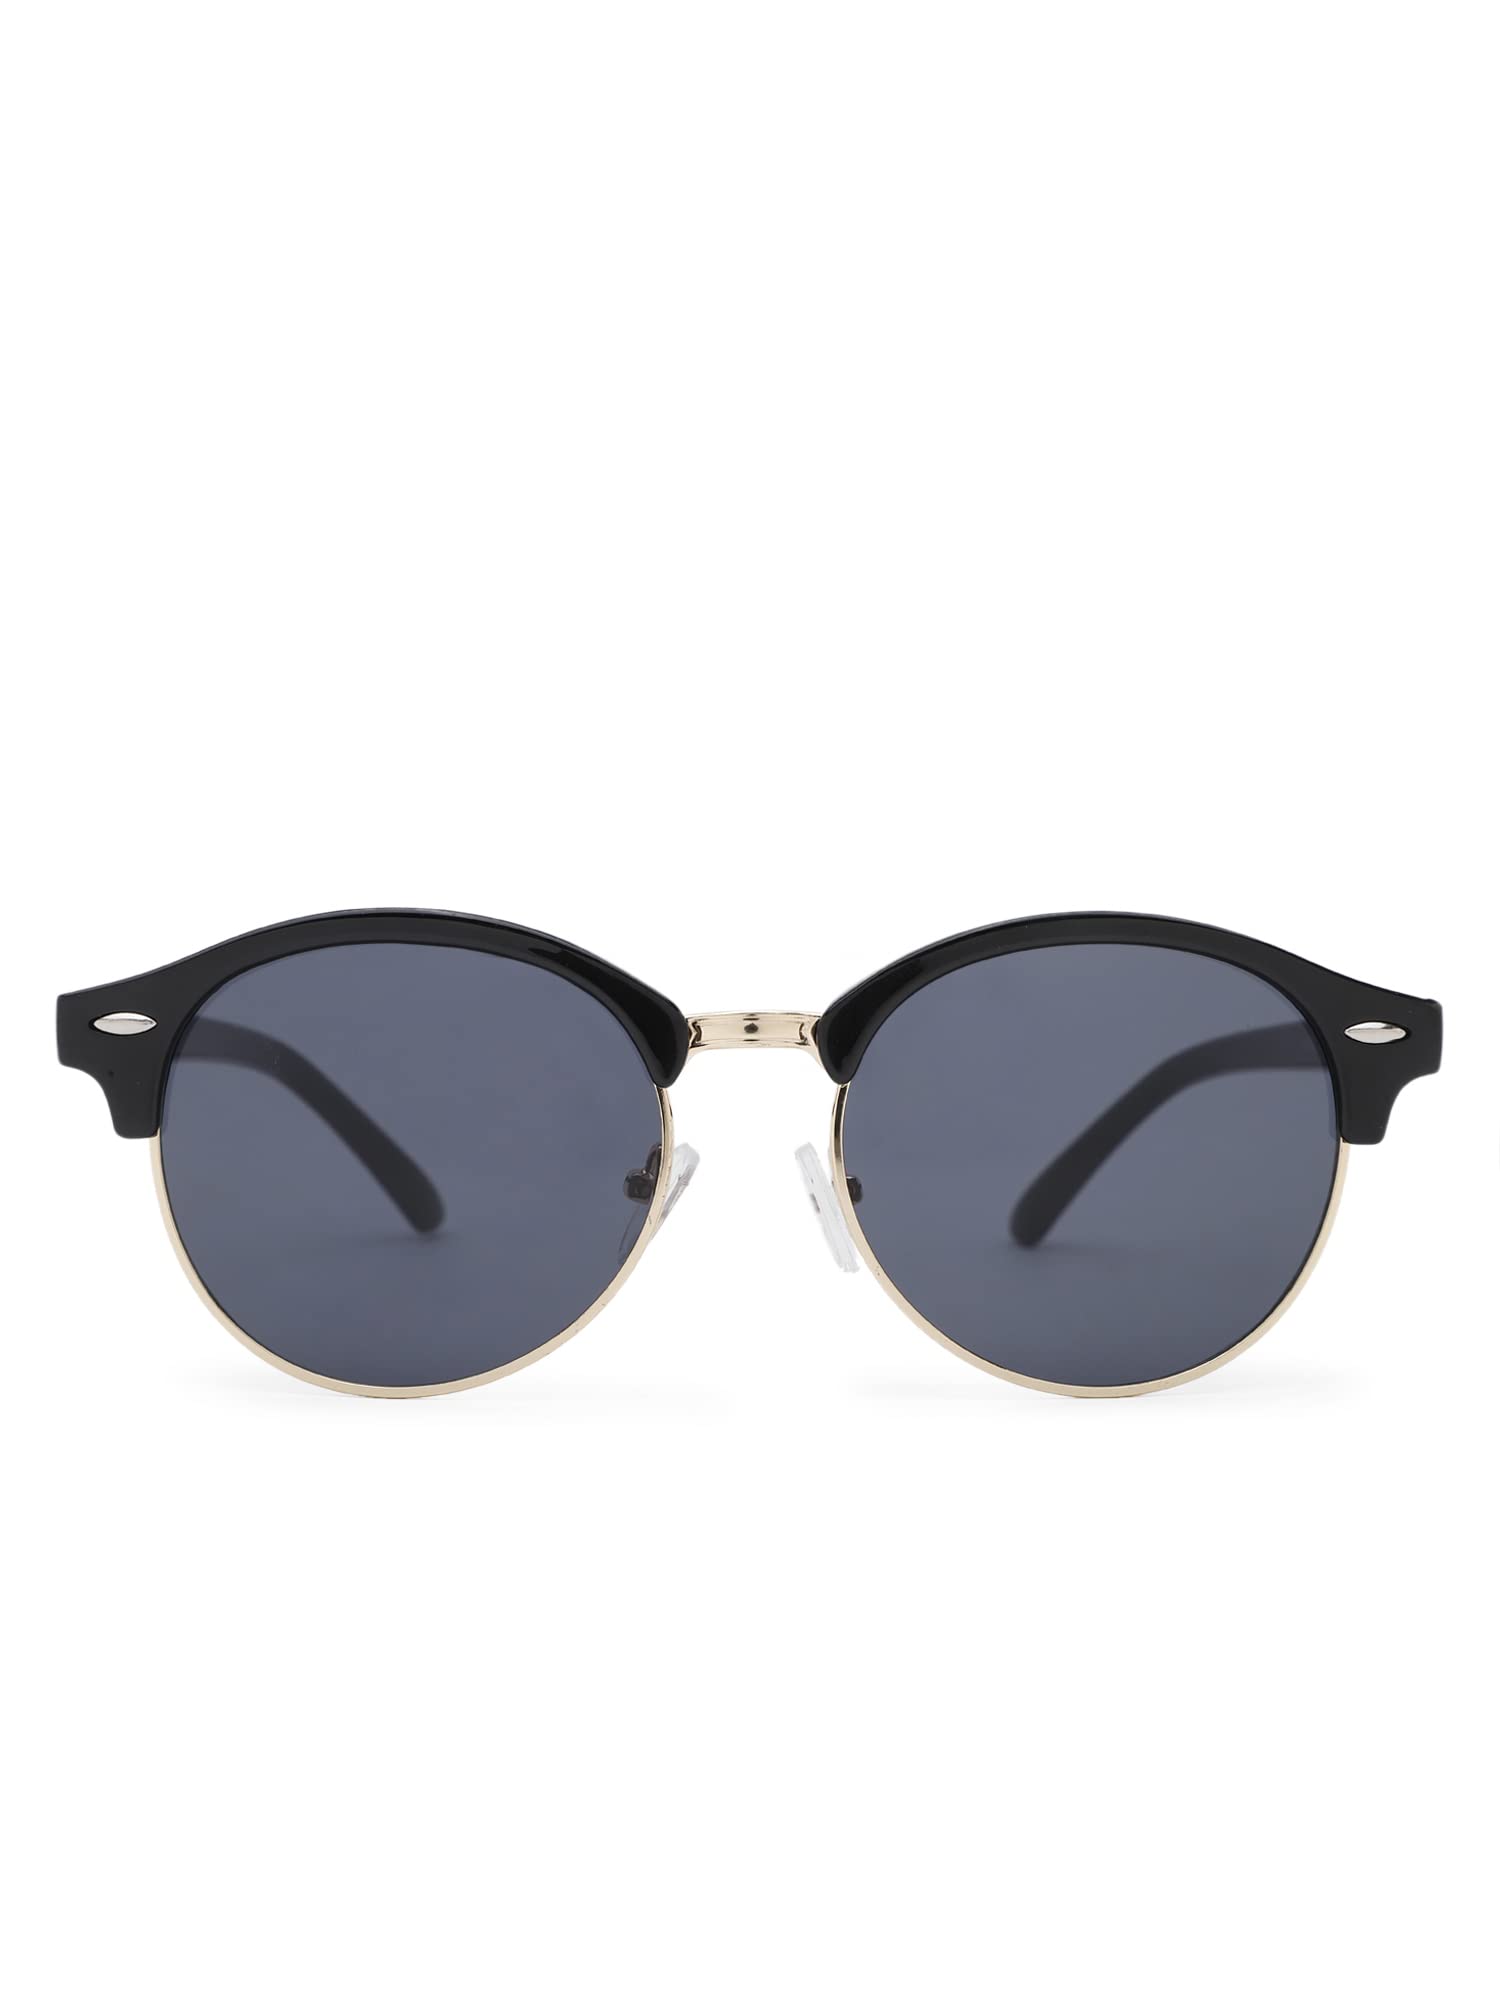 Intellilens Round Sunglasses For Men & Women|UV Protected Goggles for Men & Women (Black) (55-22-140)